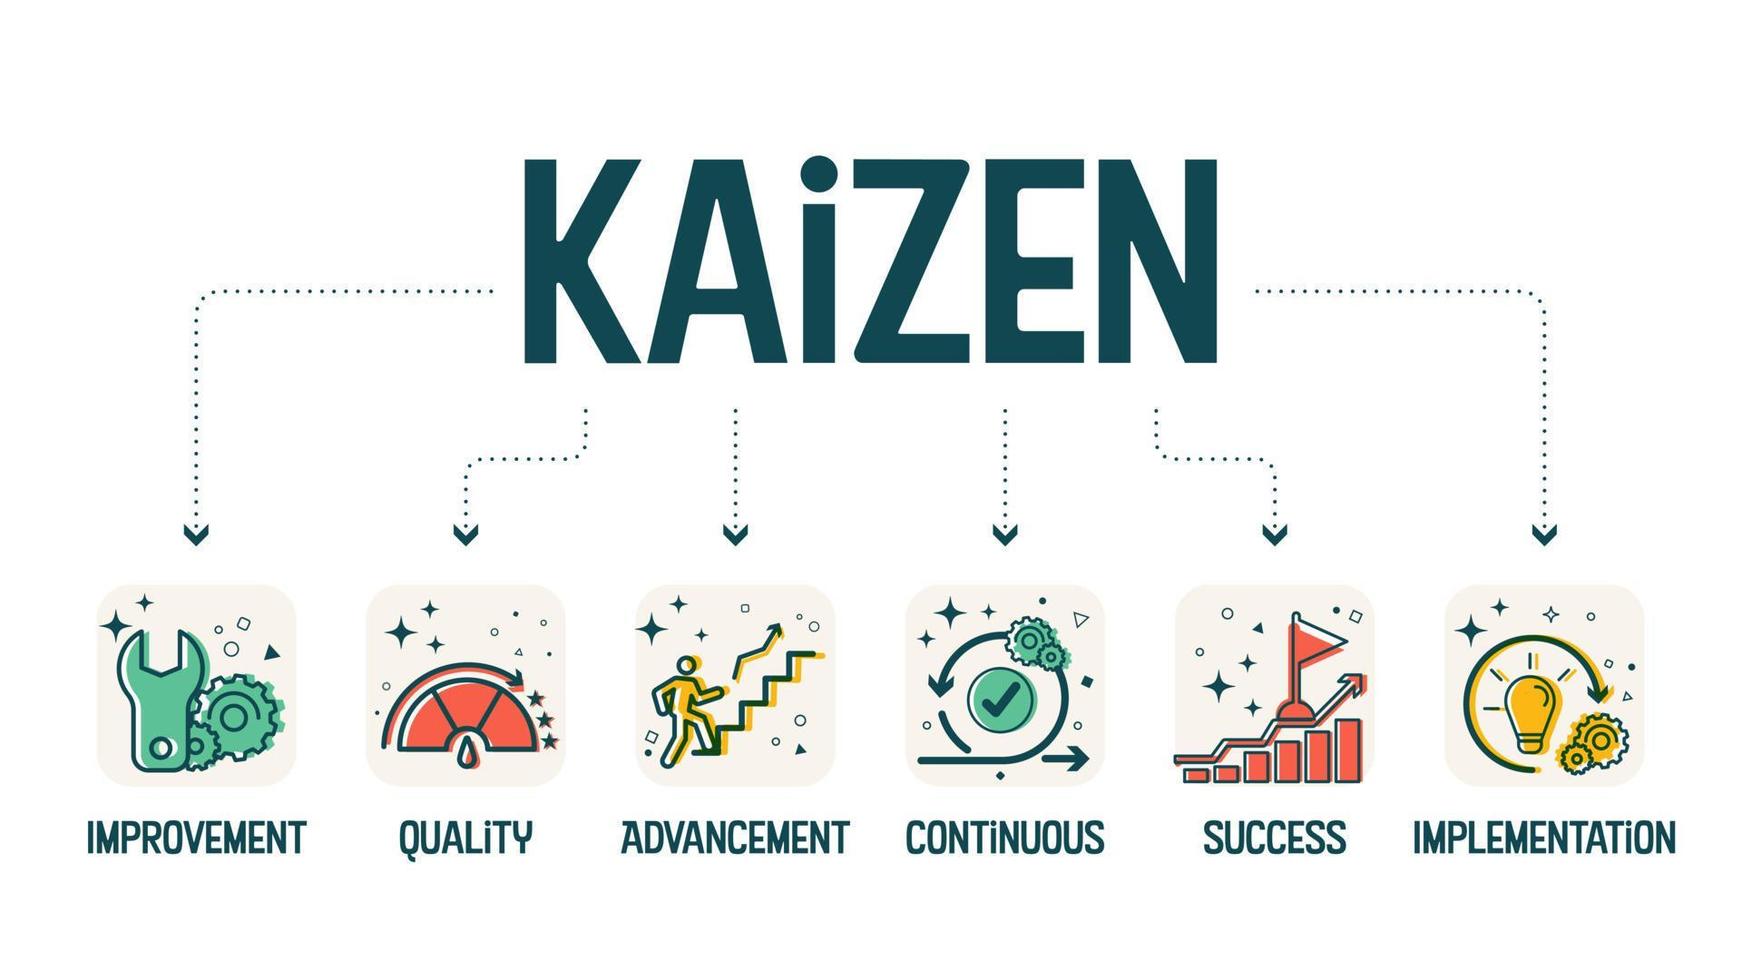 un vector de banner de diagrama en el concepto kaizen es un elemento de mejora continua como mejora, calidad, avance, éxito e implementación para analizar la productividad en el desarrollo de la fabricación